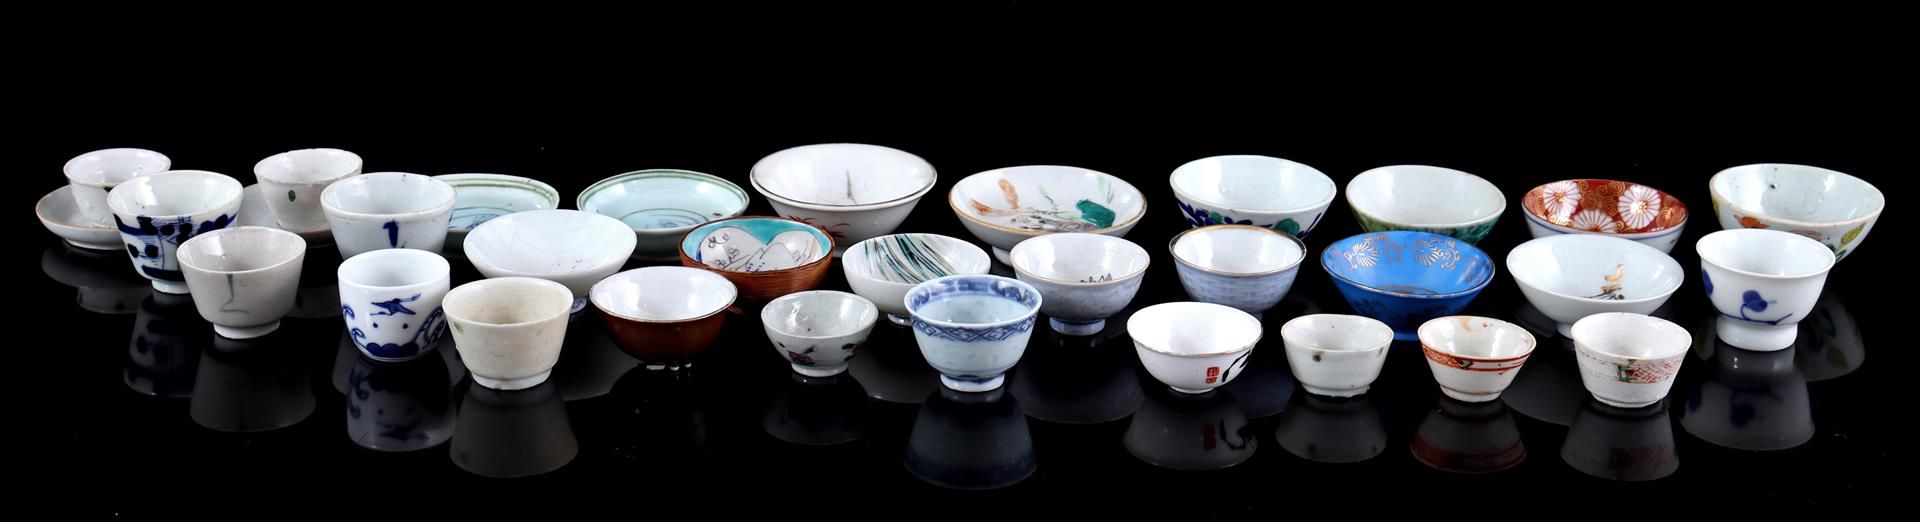 Lot of 31 porcelain